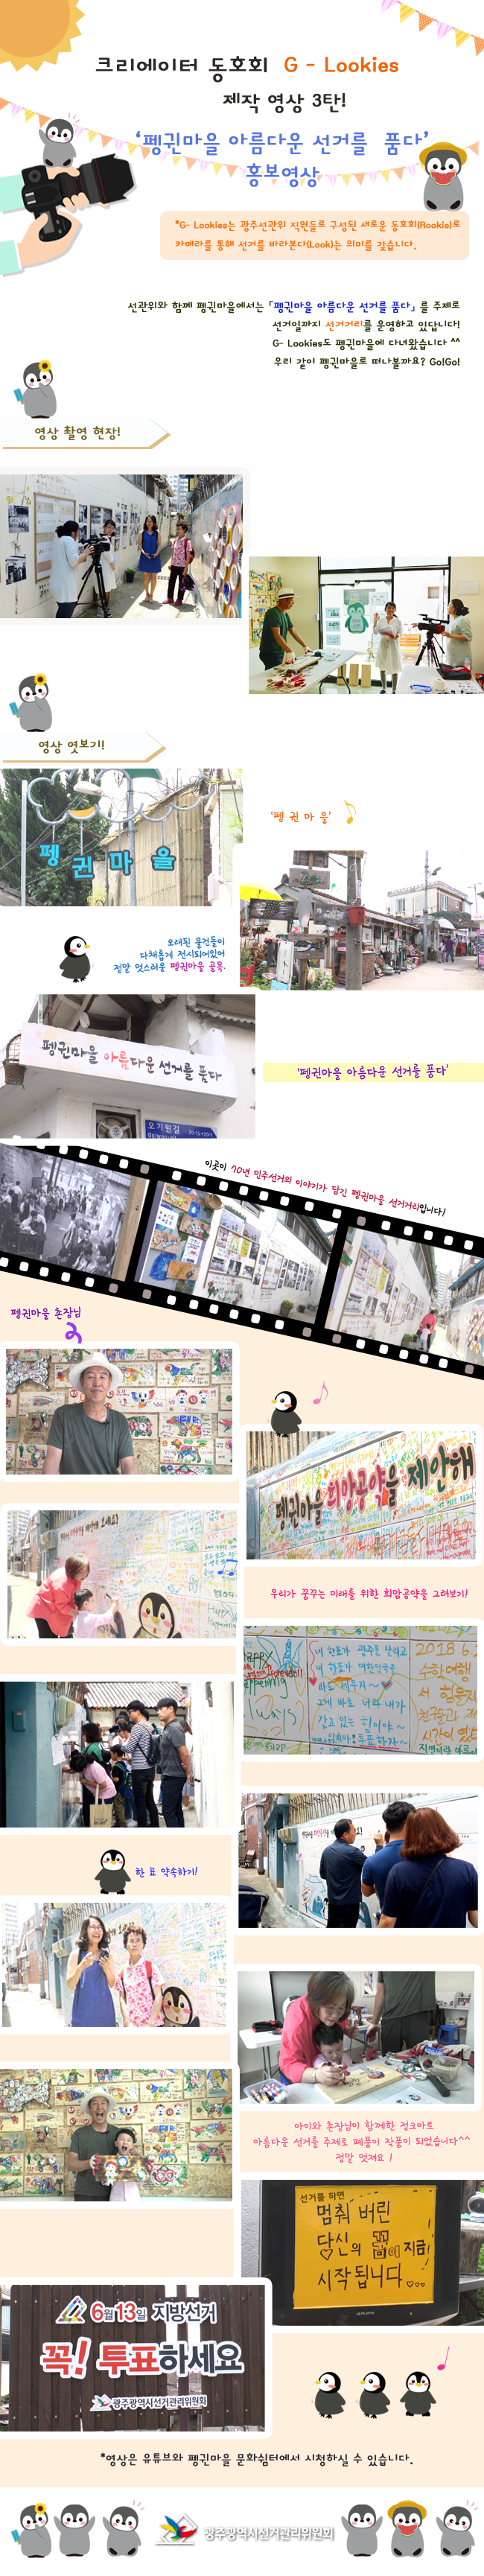 크리에이터 동호회 G-Lookies 제작 영상 3탄! ‘펭귄마을 아름다운 선거를 품다’ 홍보영상